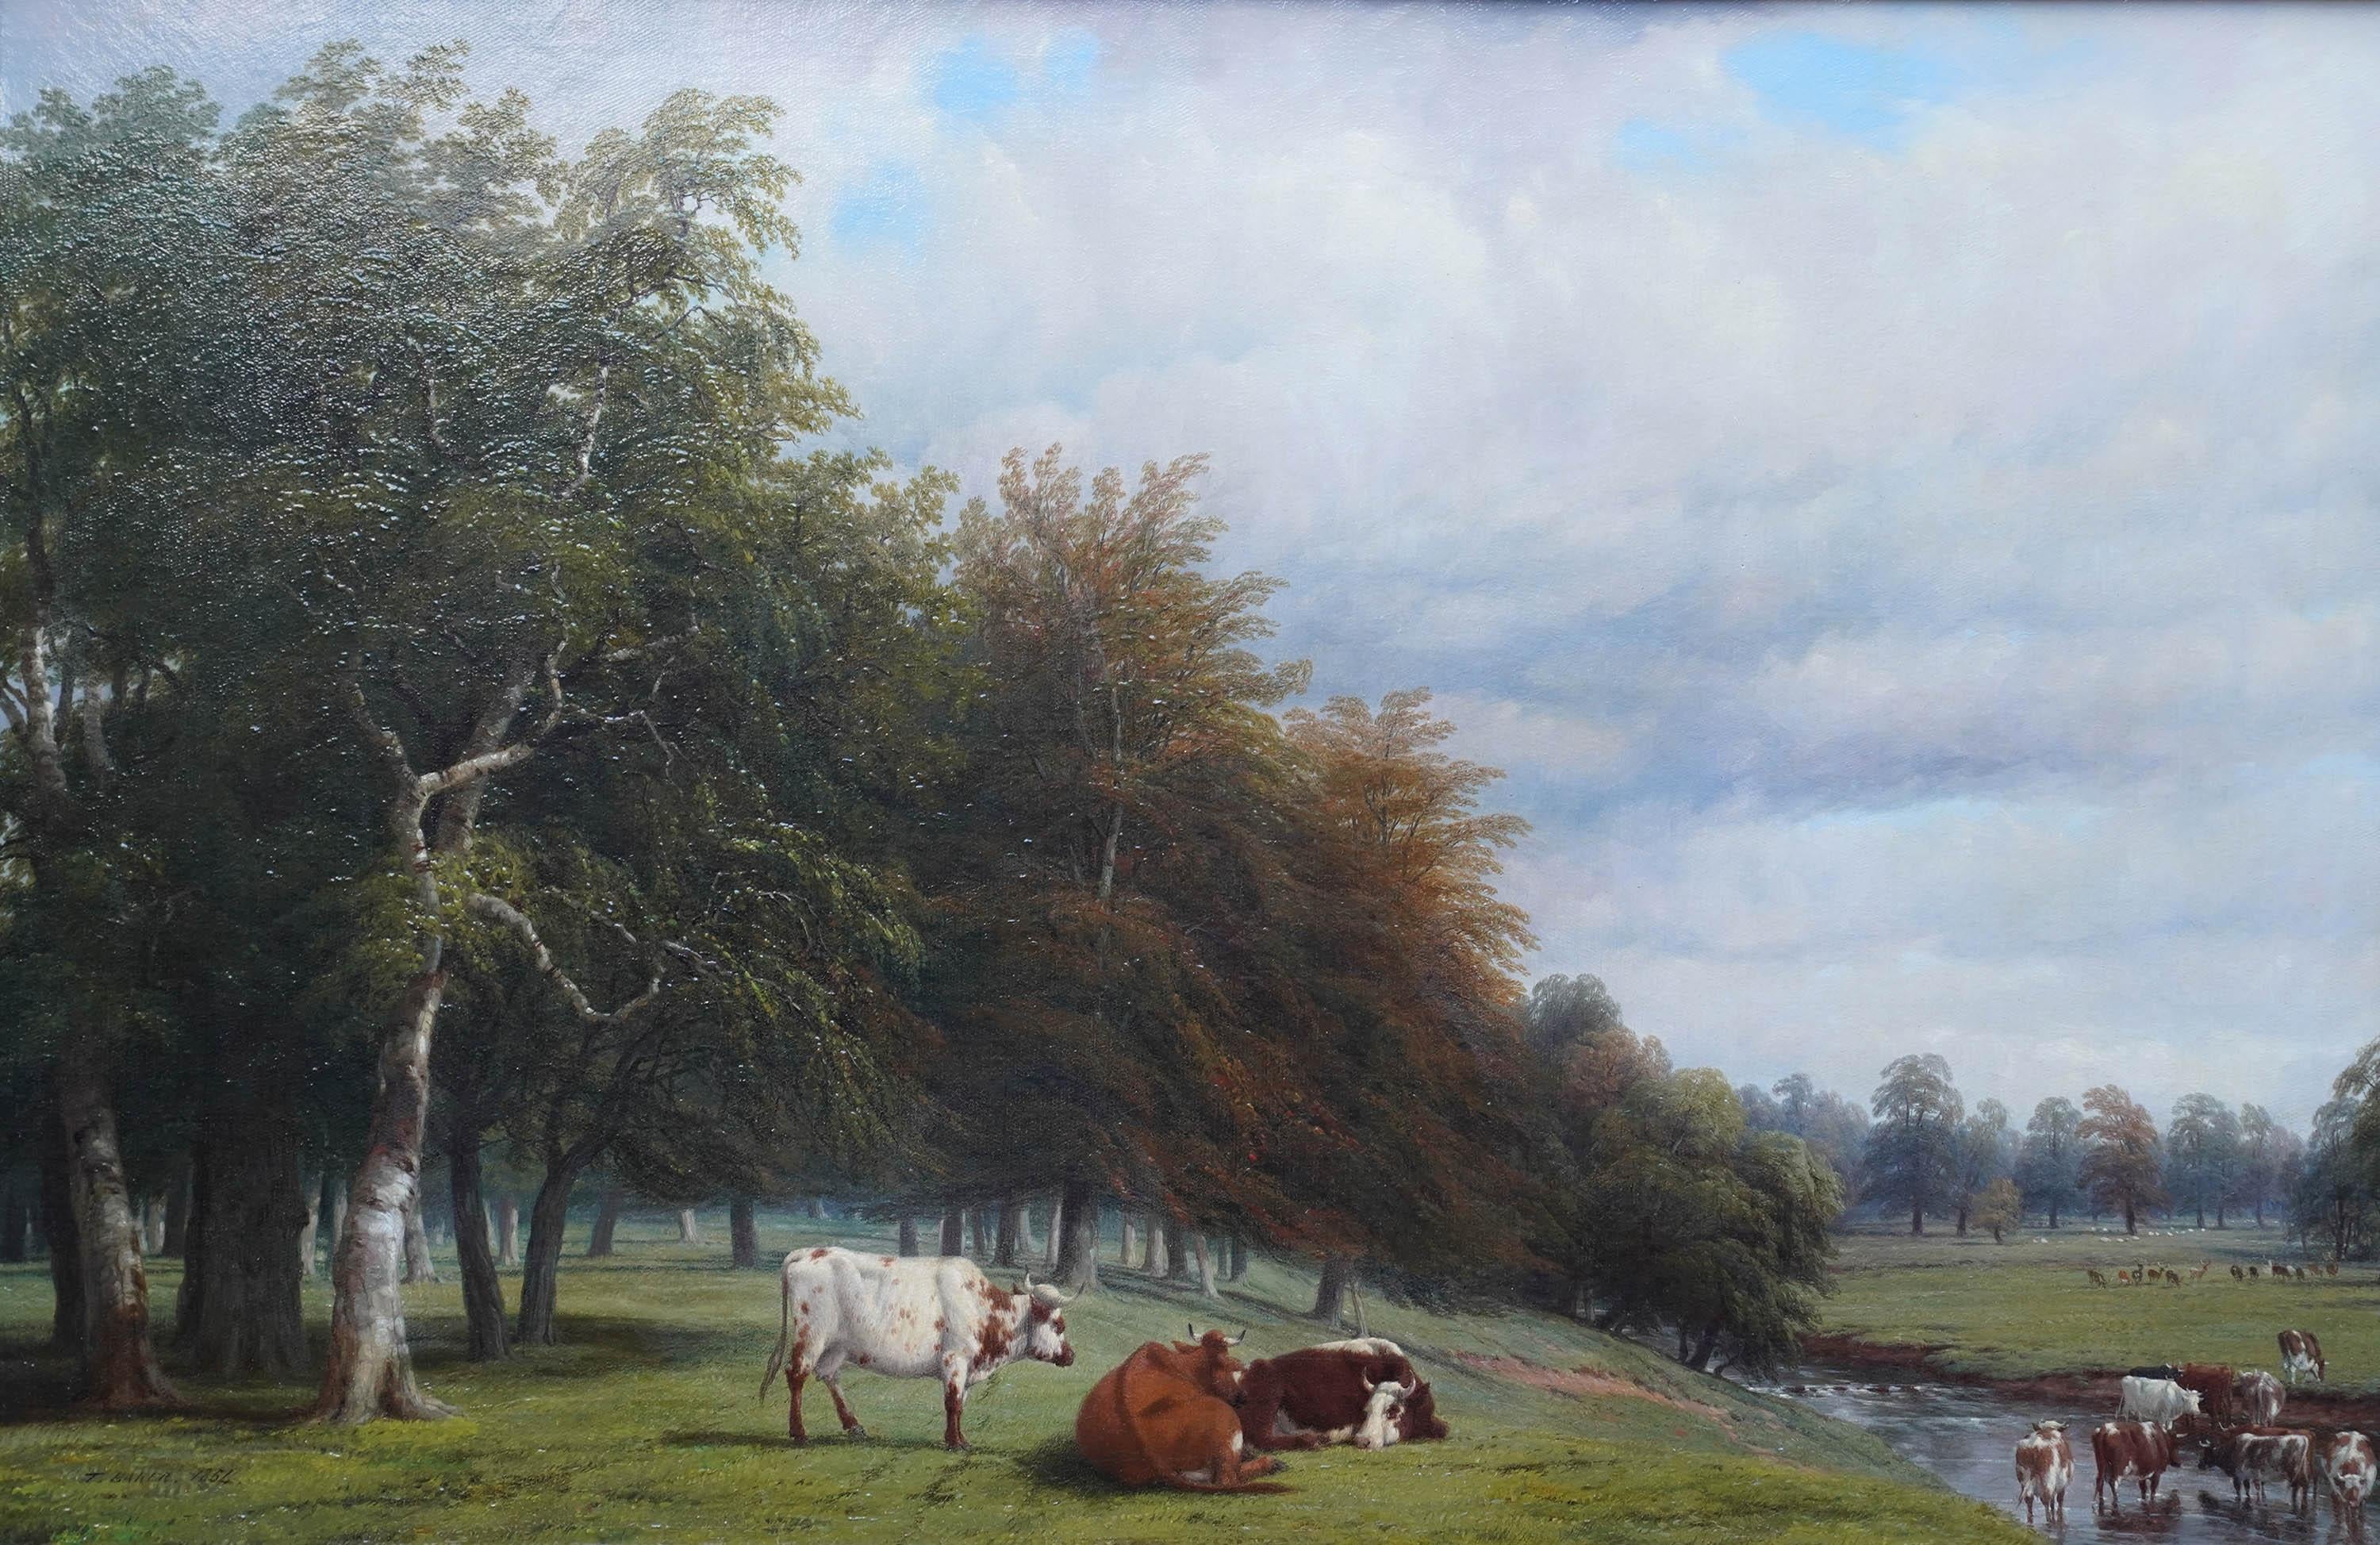 Cattle Grazing in a Wooded Landscape - Peinture à l'huile d'art victorienne britannique